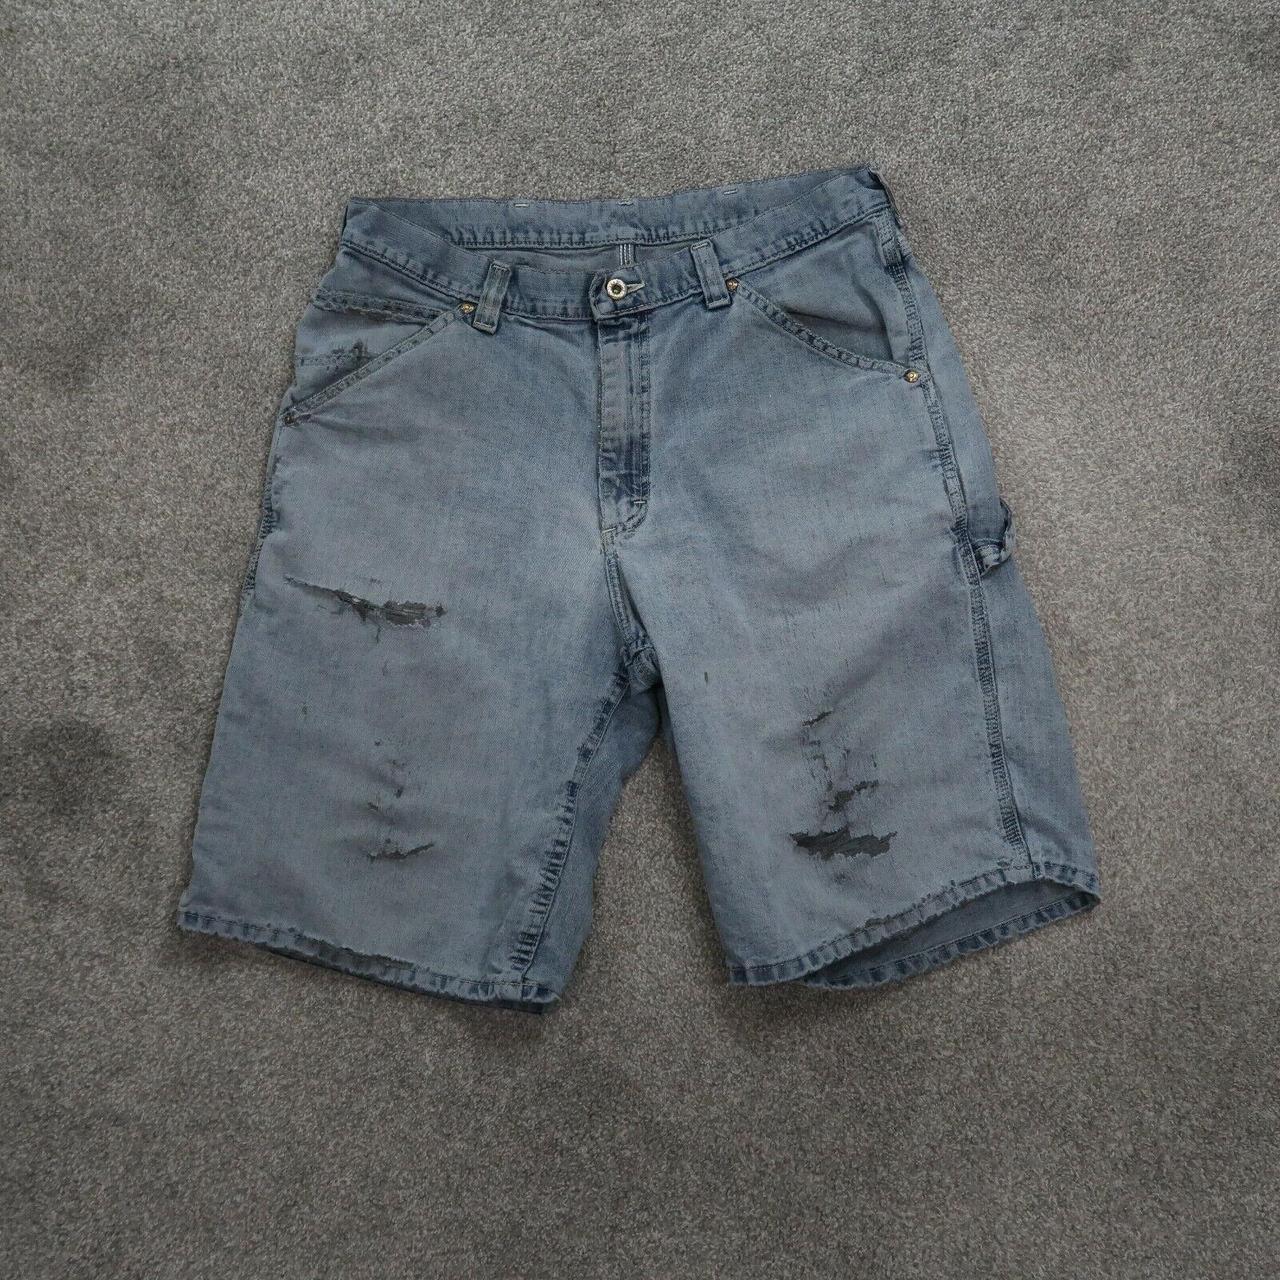 Lee Dungarees Carpenter Blue Denim Shorts Men's Size... - Depop